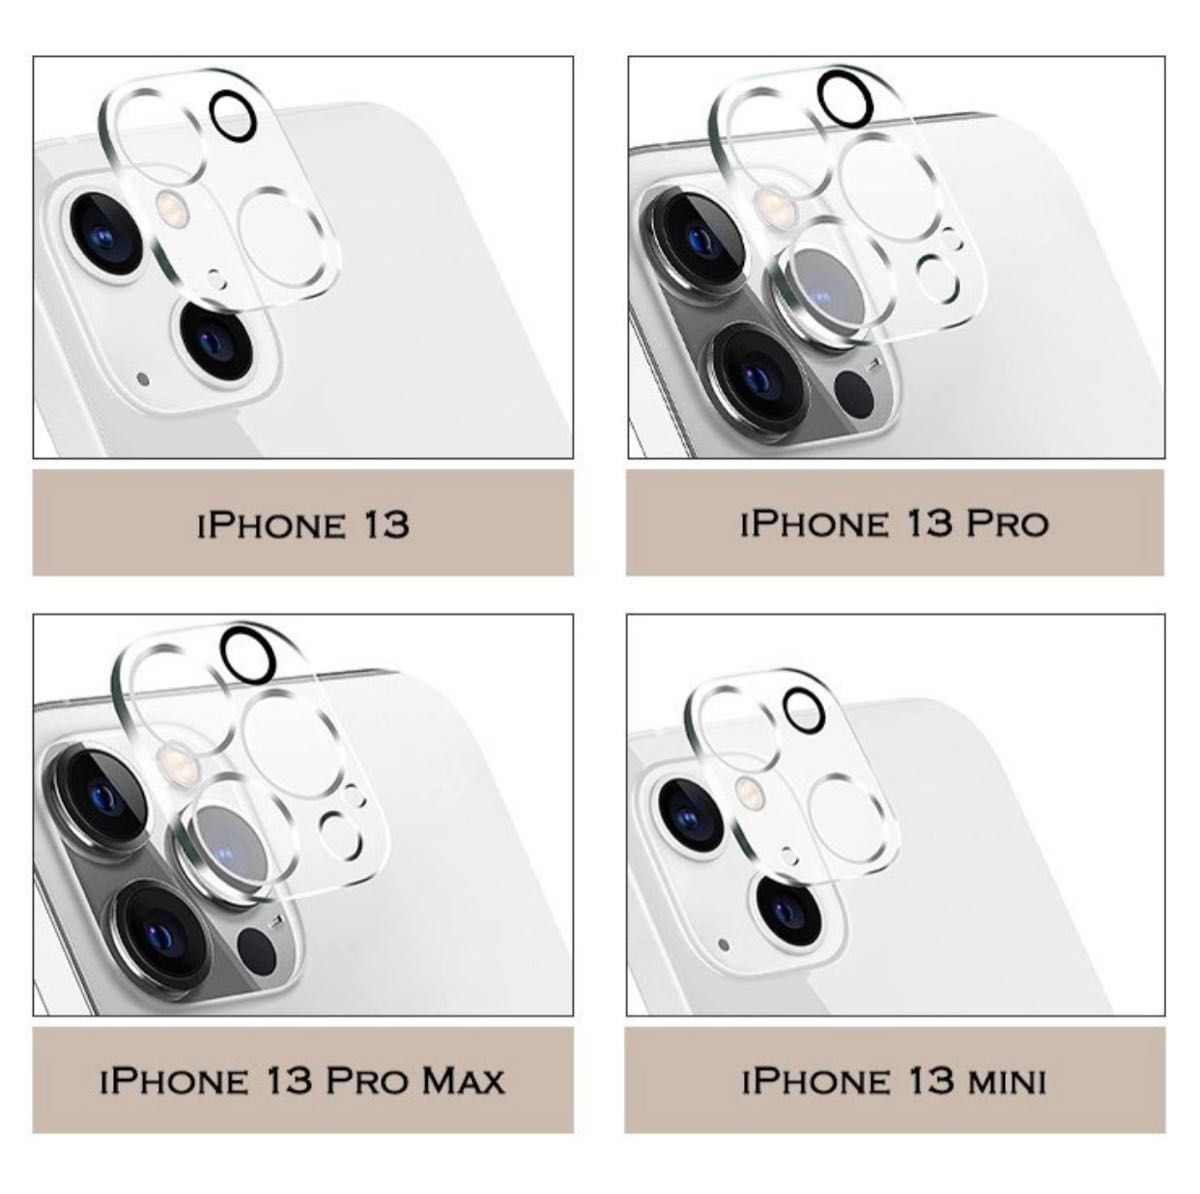 iPhone12 iPhone12pro/promax mini カメラレンズ 保護フィルム ガラスフィルム 透明 クリアカバー